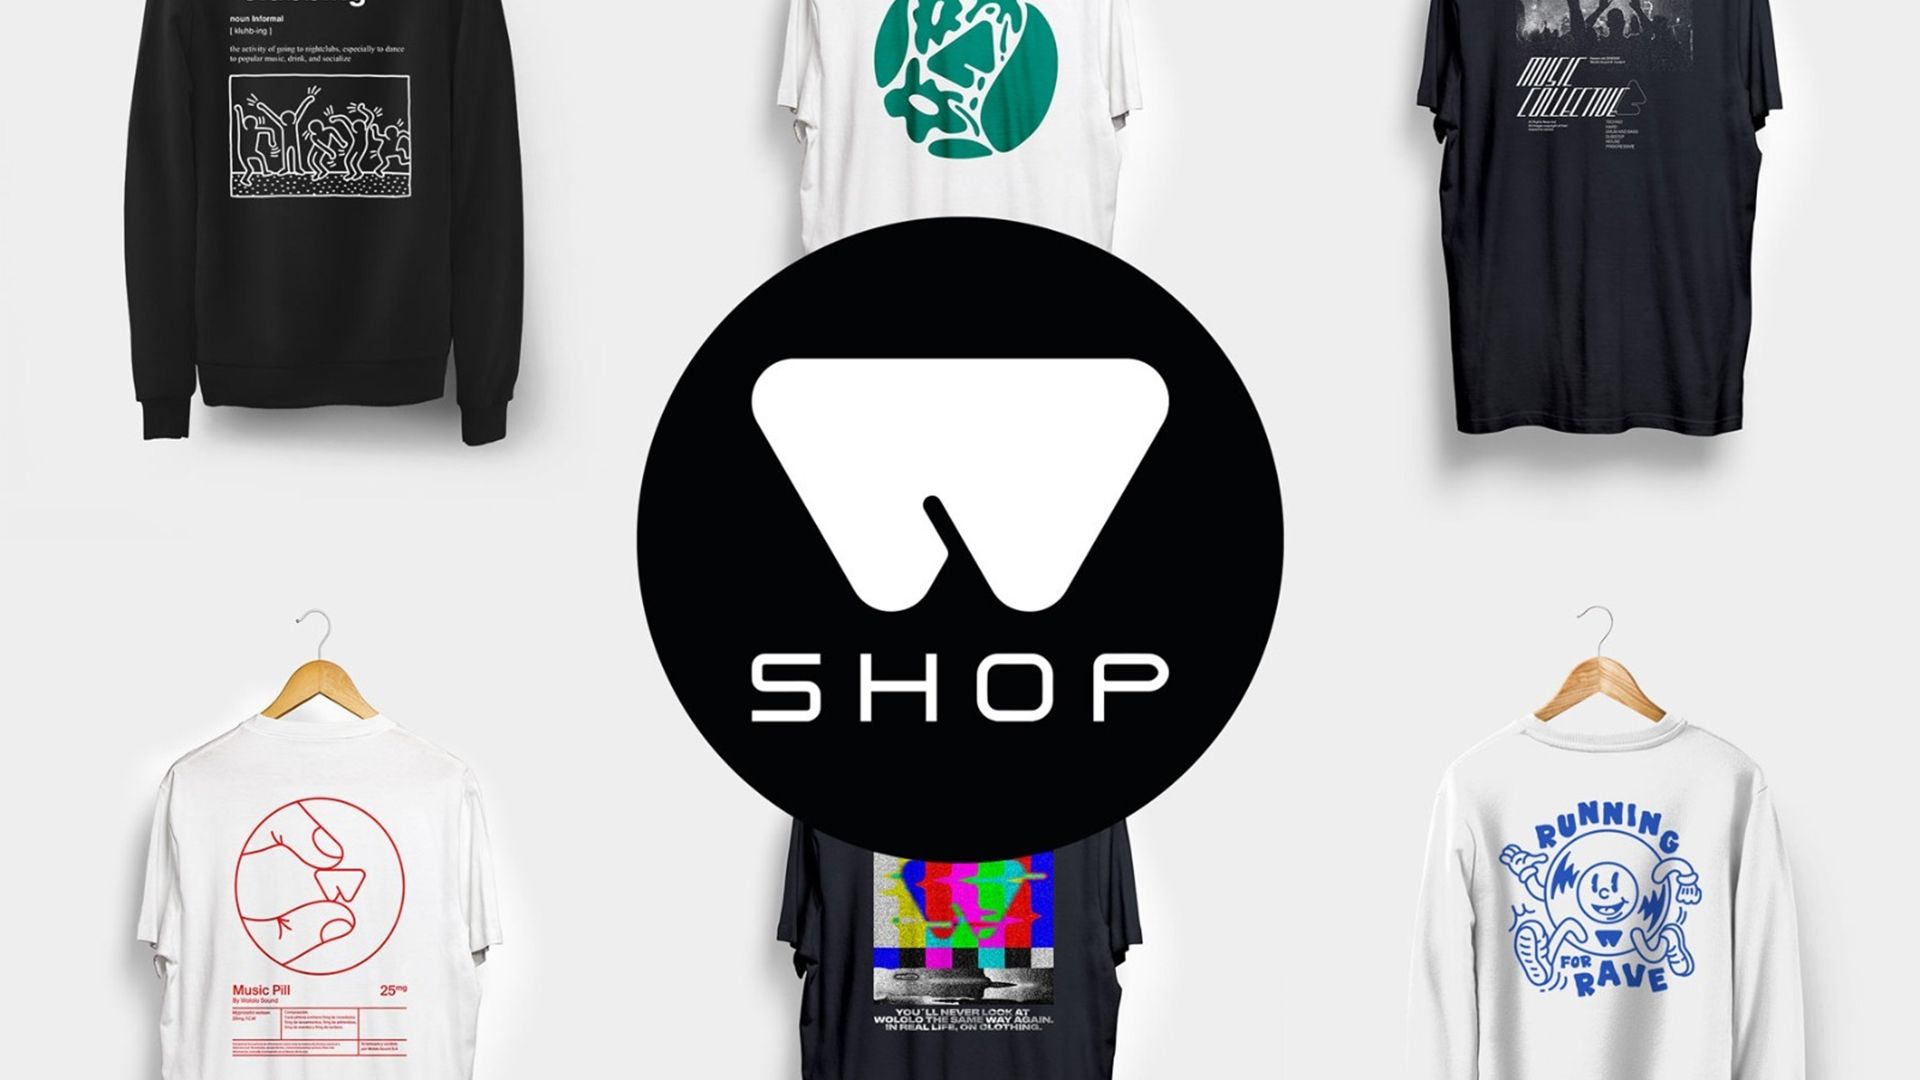 Camisetas música electrónica: Wololo Shop by Wololo Sound